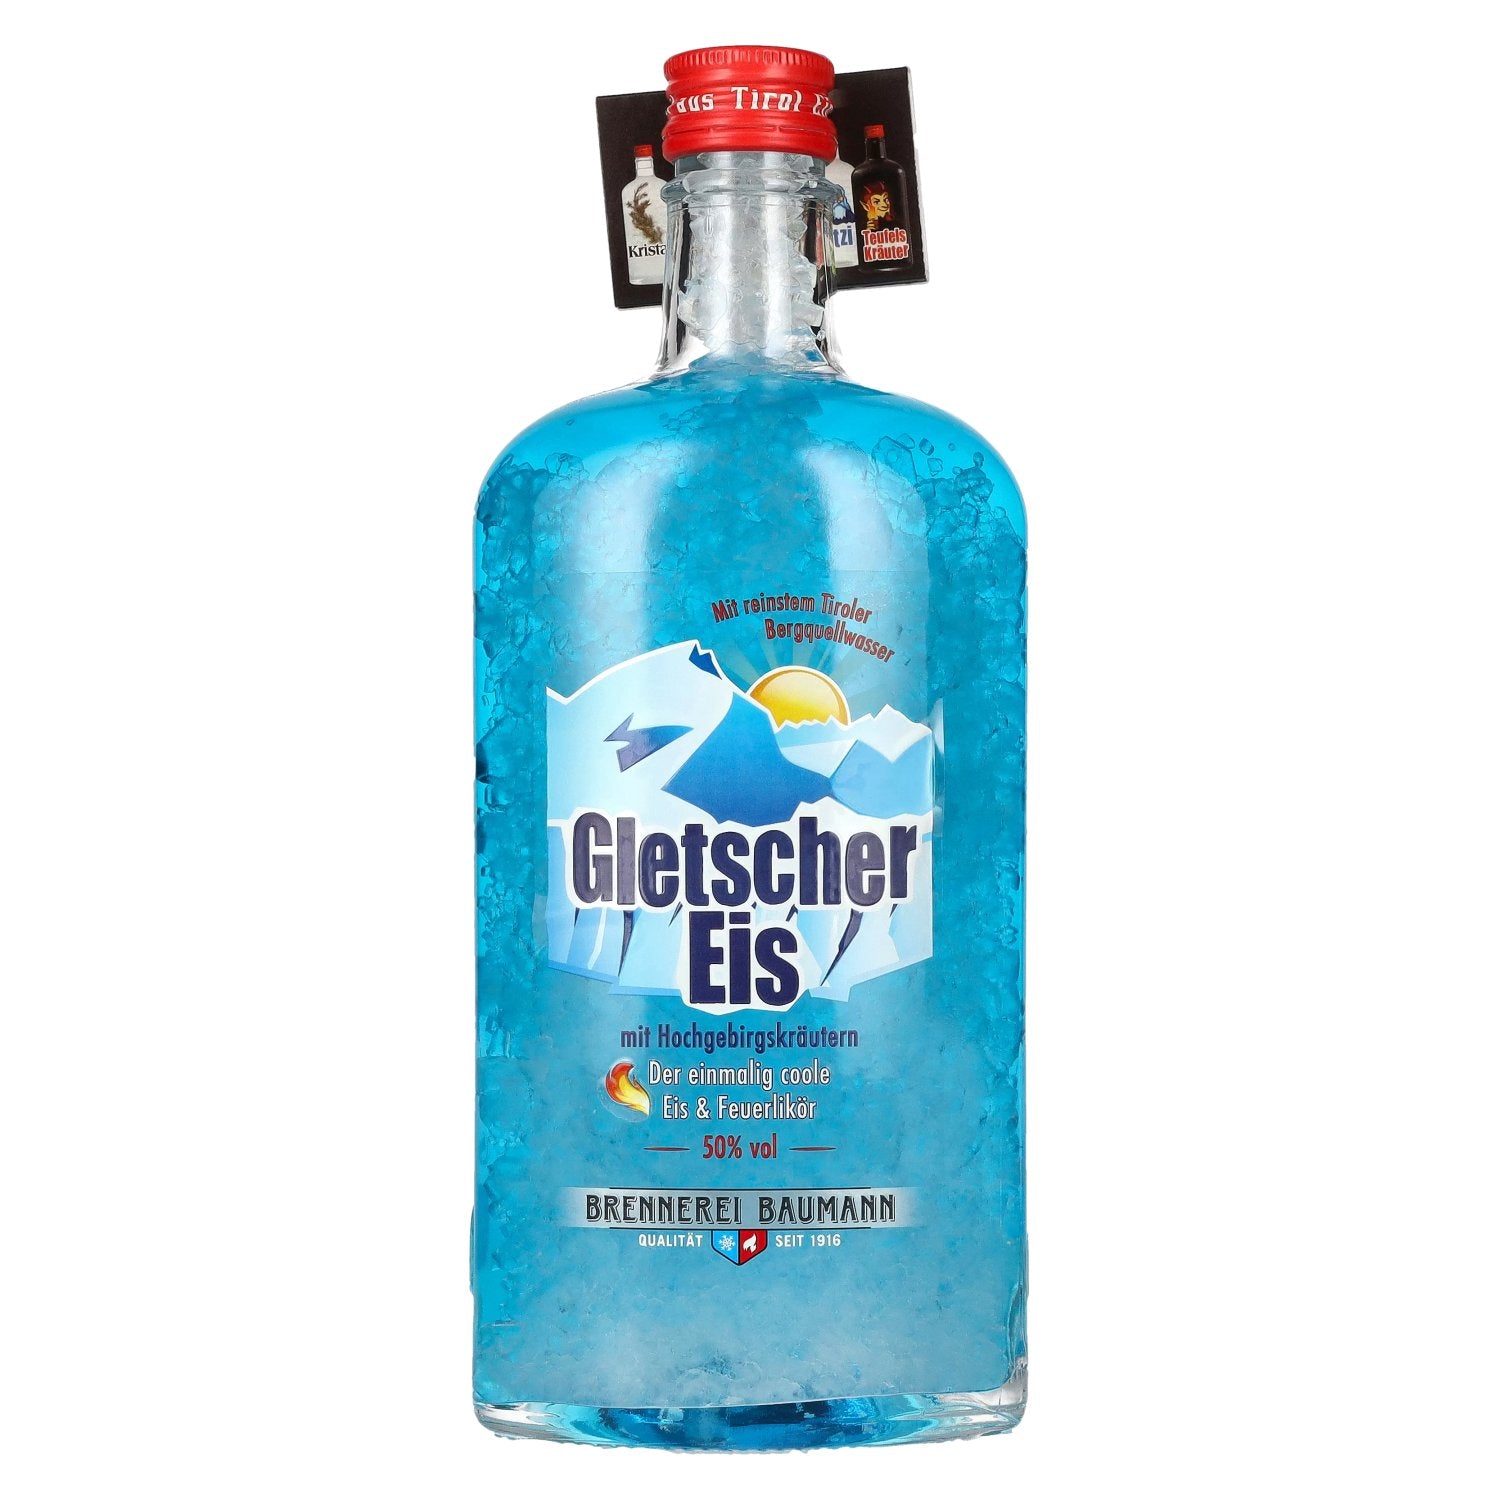 Baumann Gletschereis Eis & Feuerlikoer 50% Vol. 0,7l